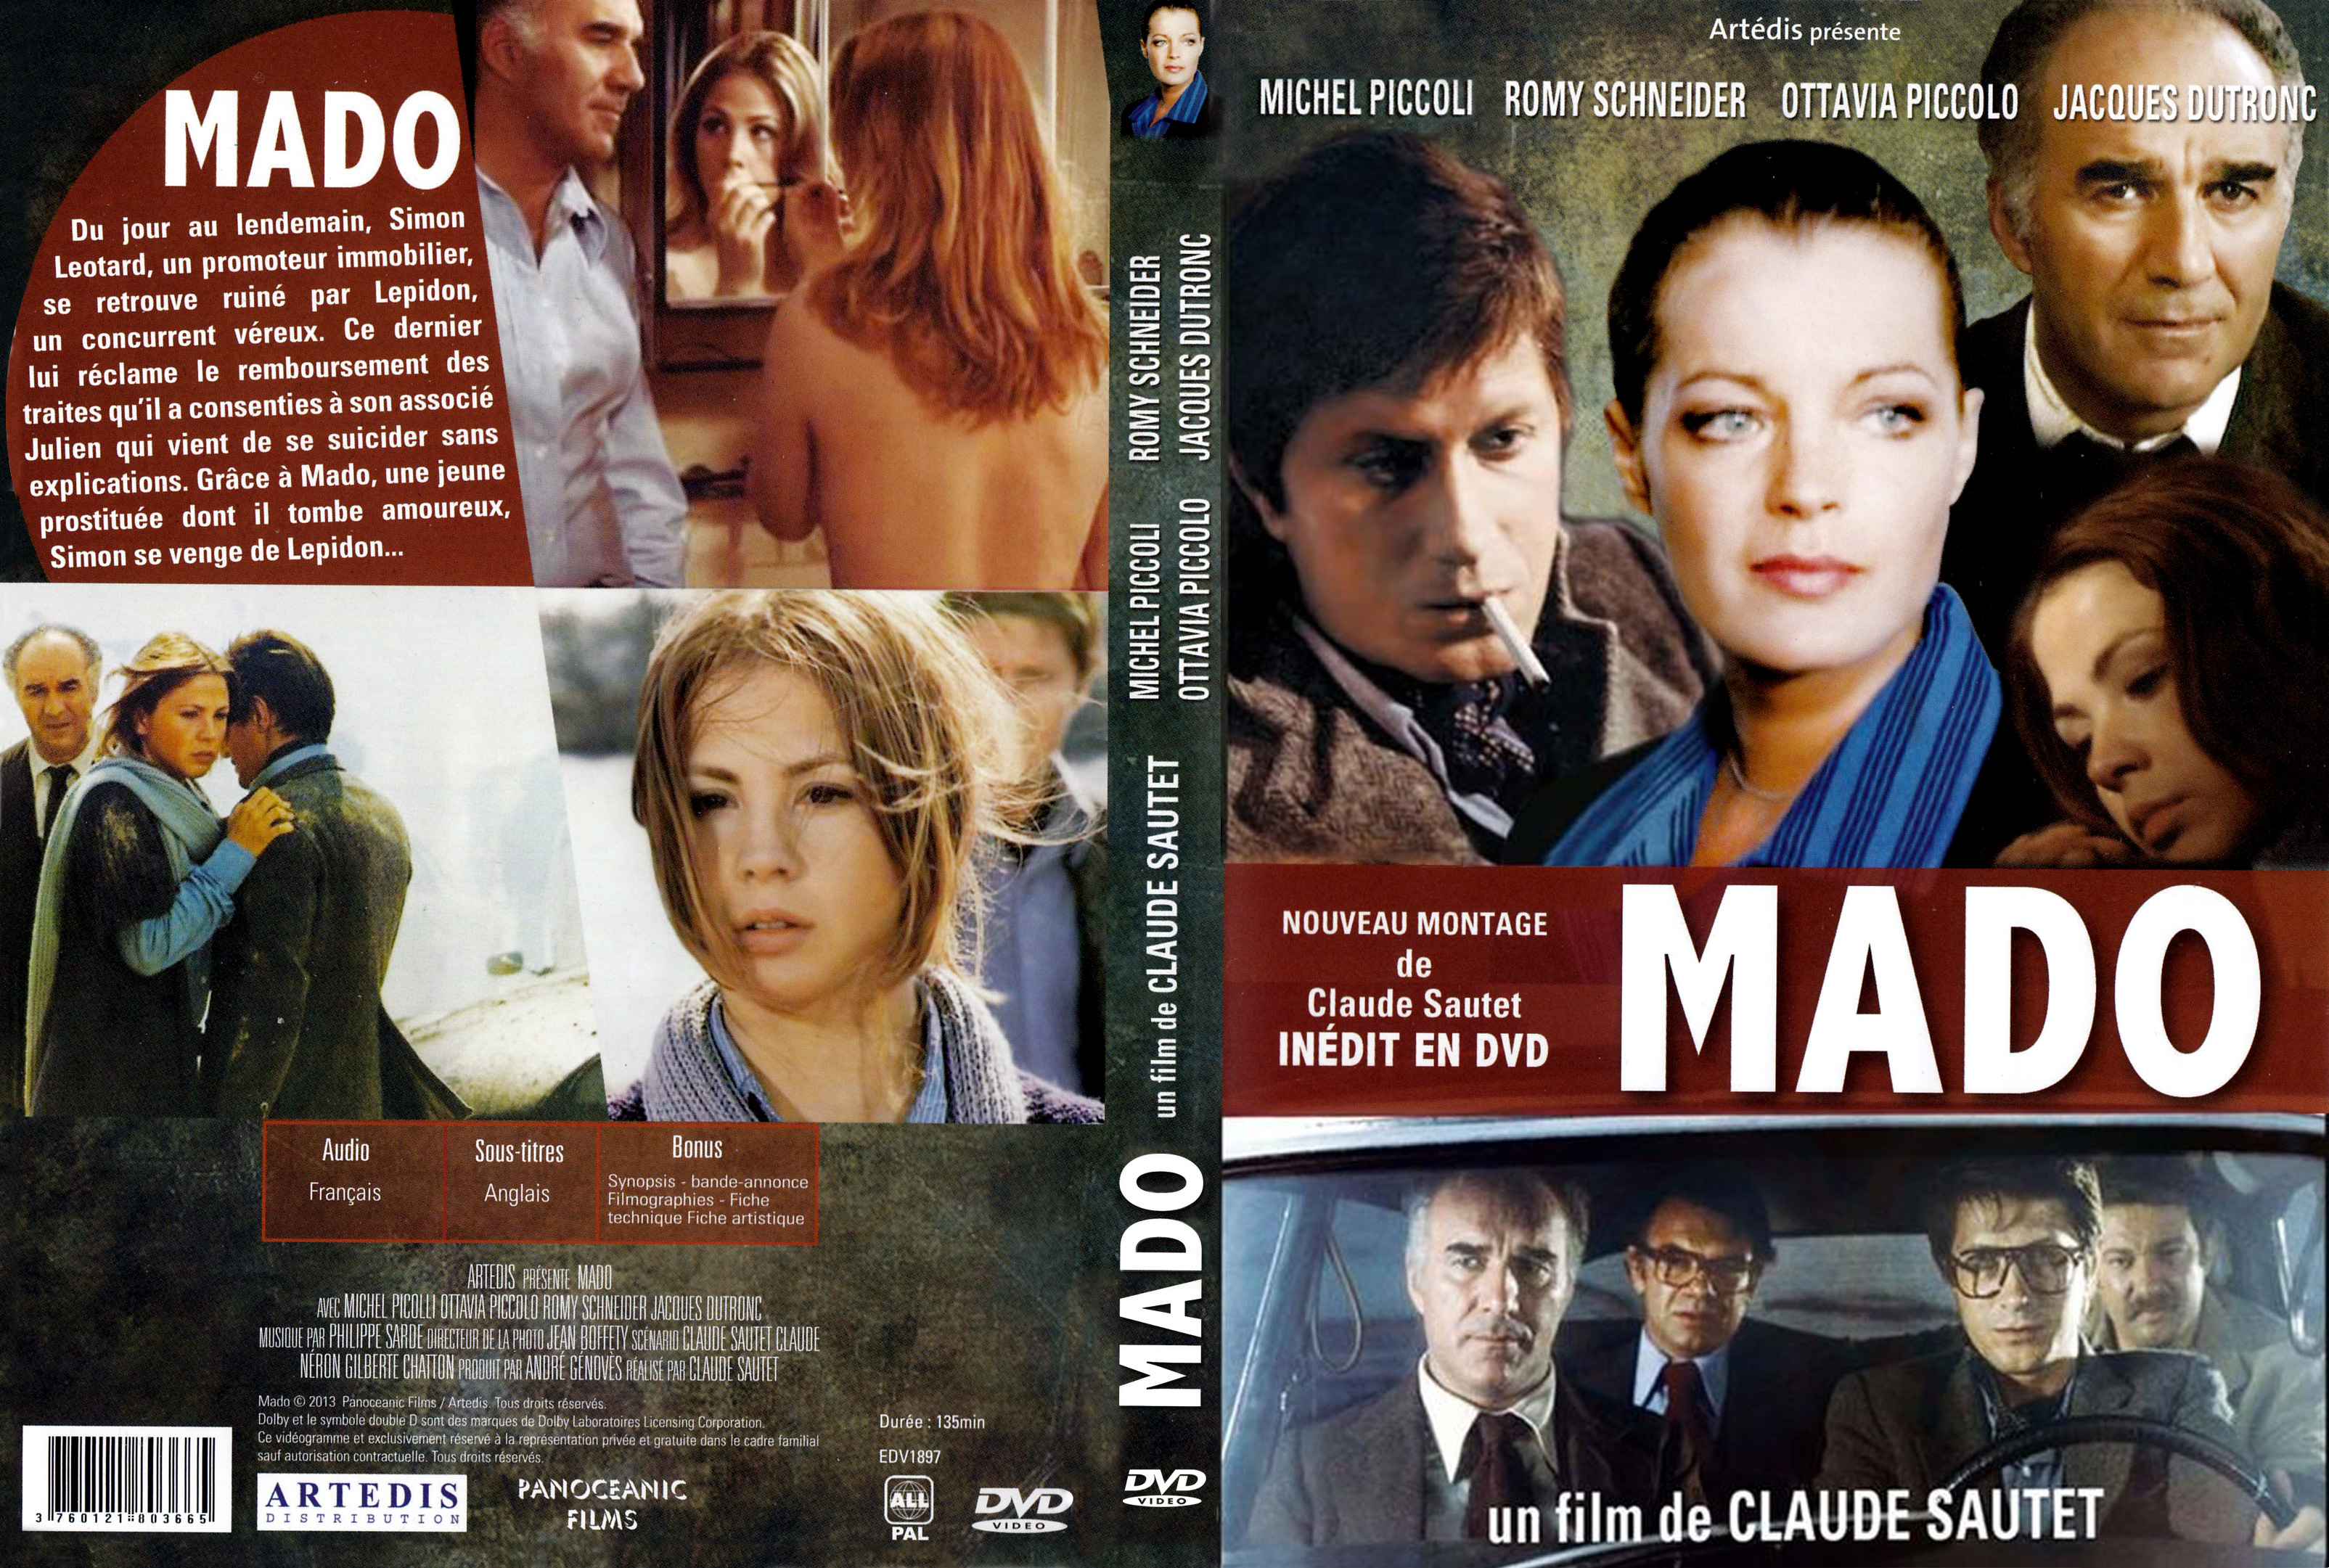 Jaquette DVD Mado v4